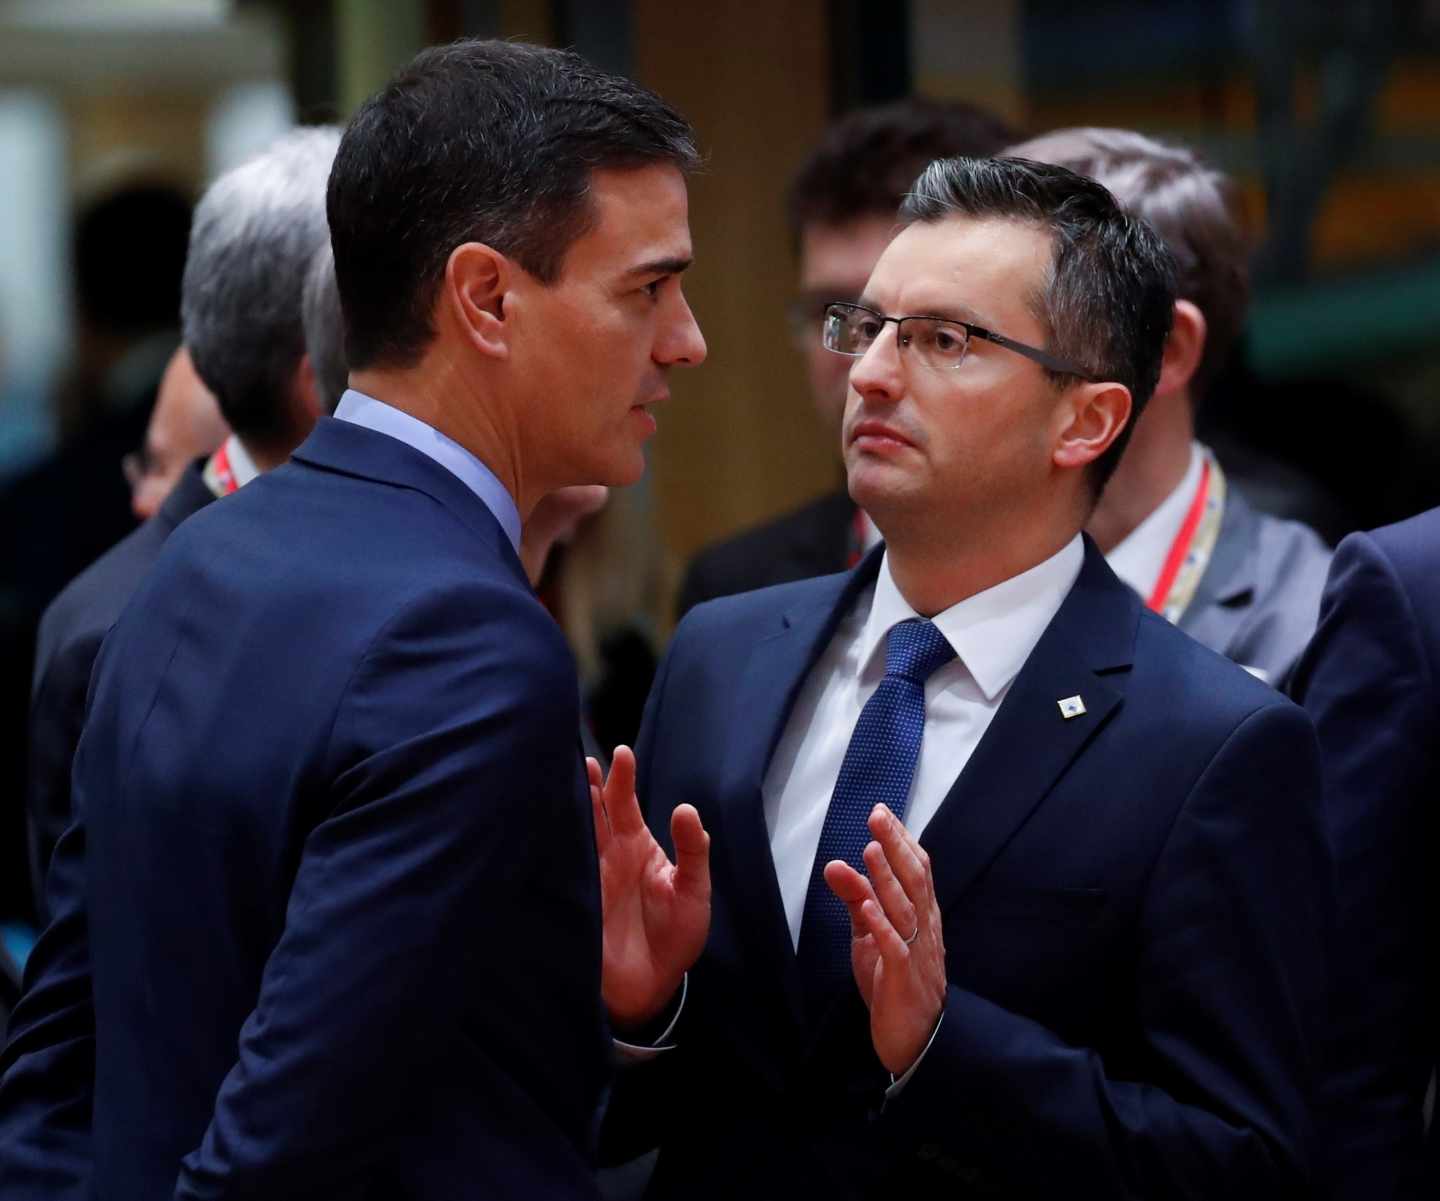 El primer ministro esloveno apoya a Sánchez frente a las propuestas de Torra